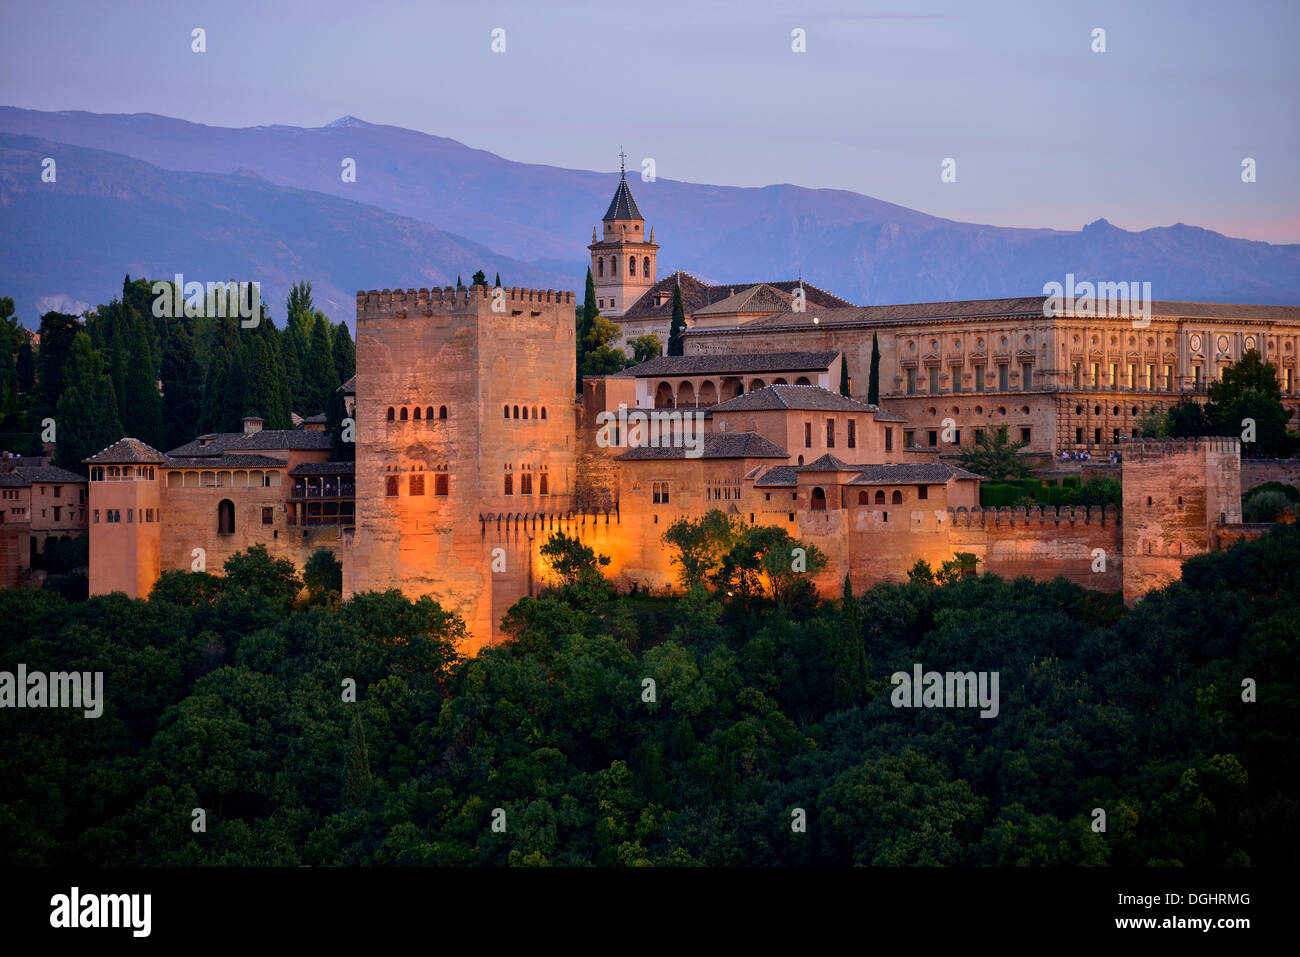 Alhambra Burg auf Sabikah Hügel, eines der wichtigsten Gebäude im maurischen Stil, UNESCO-Weltkulturerbe, Granada Stockfoto